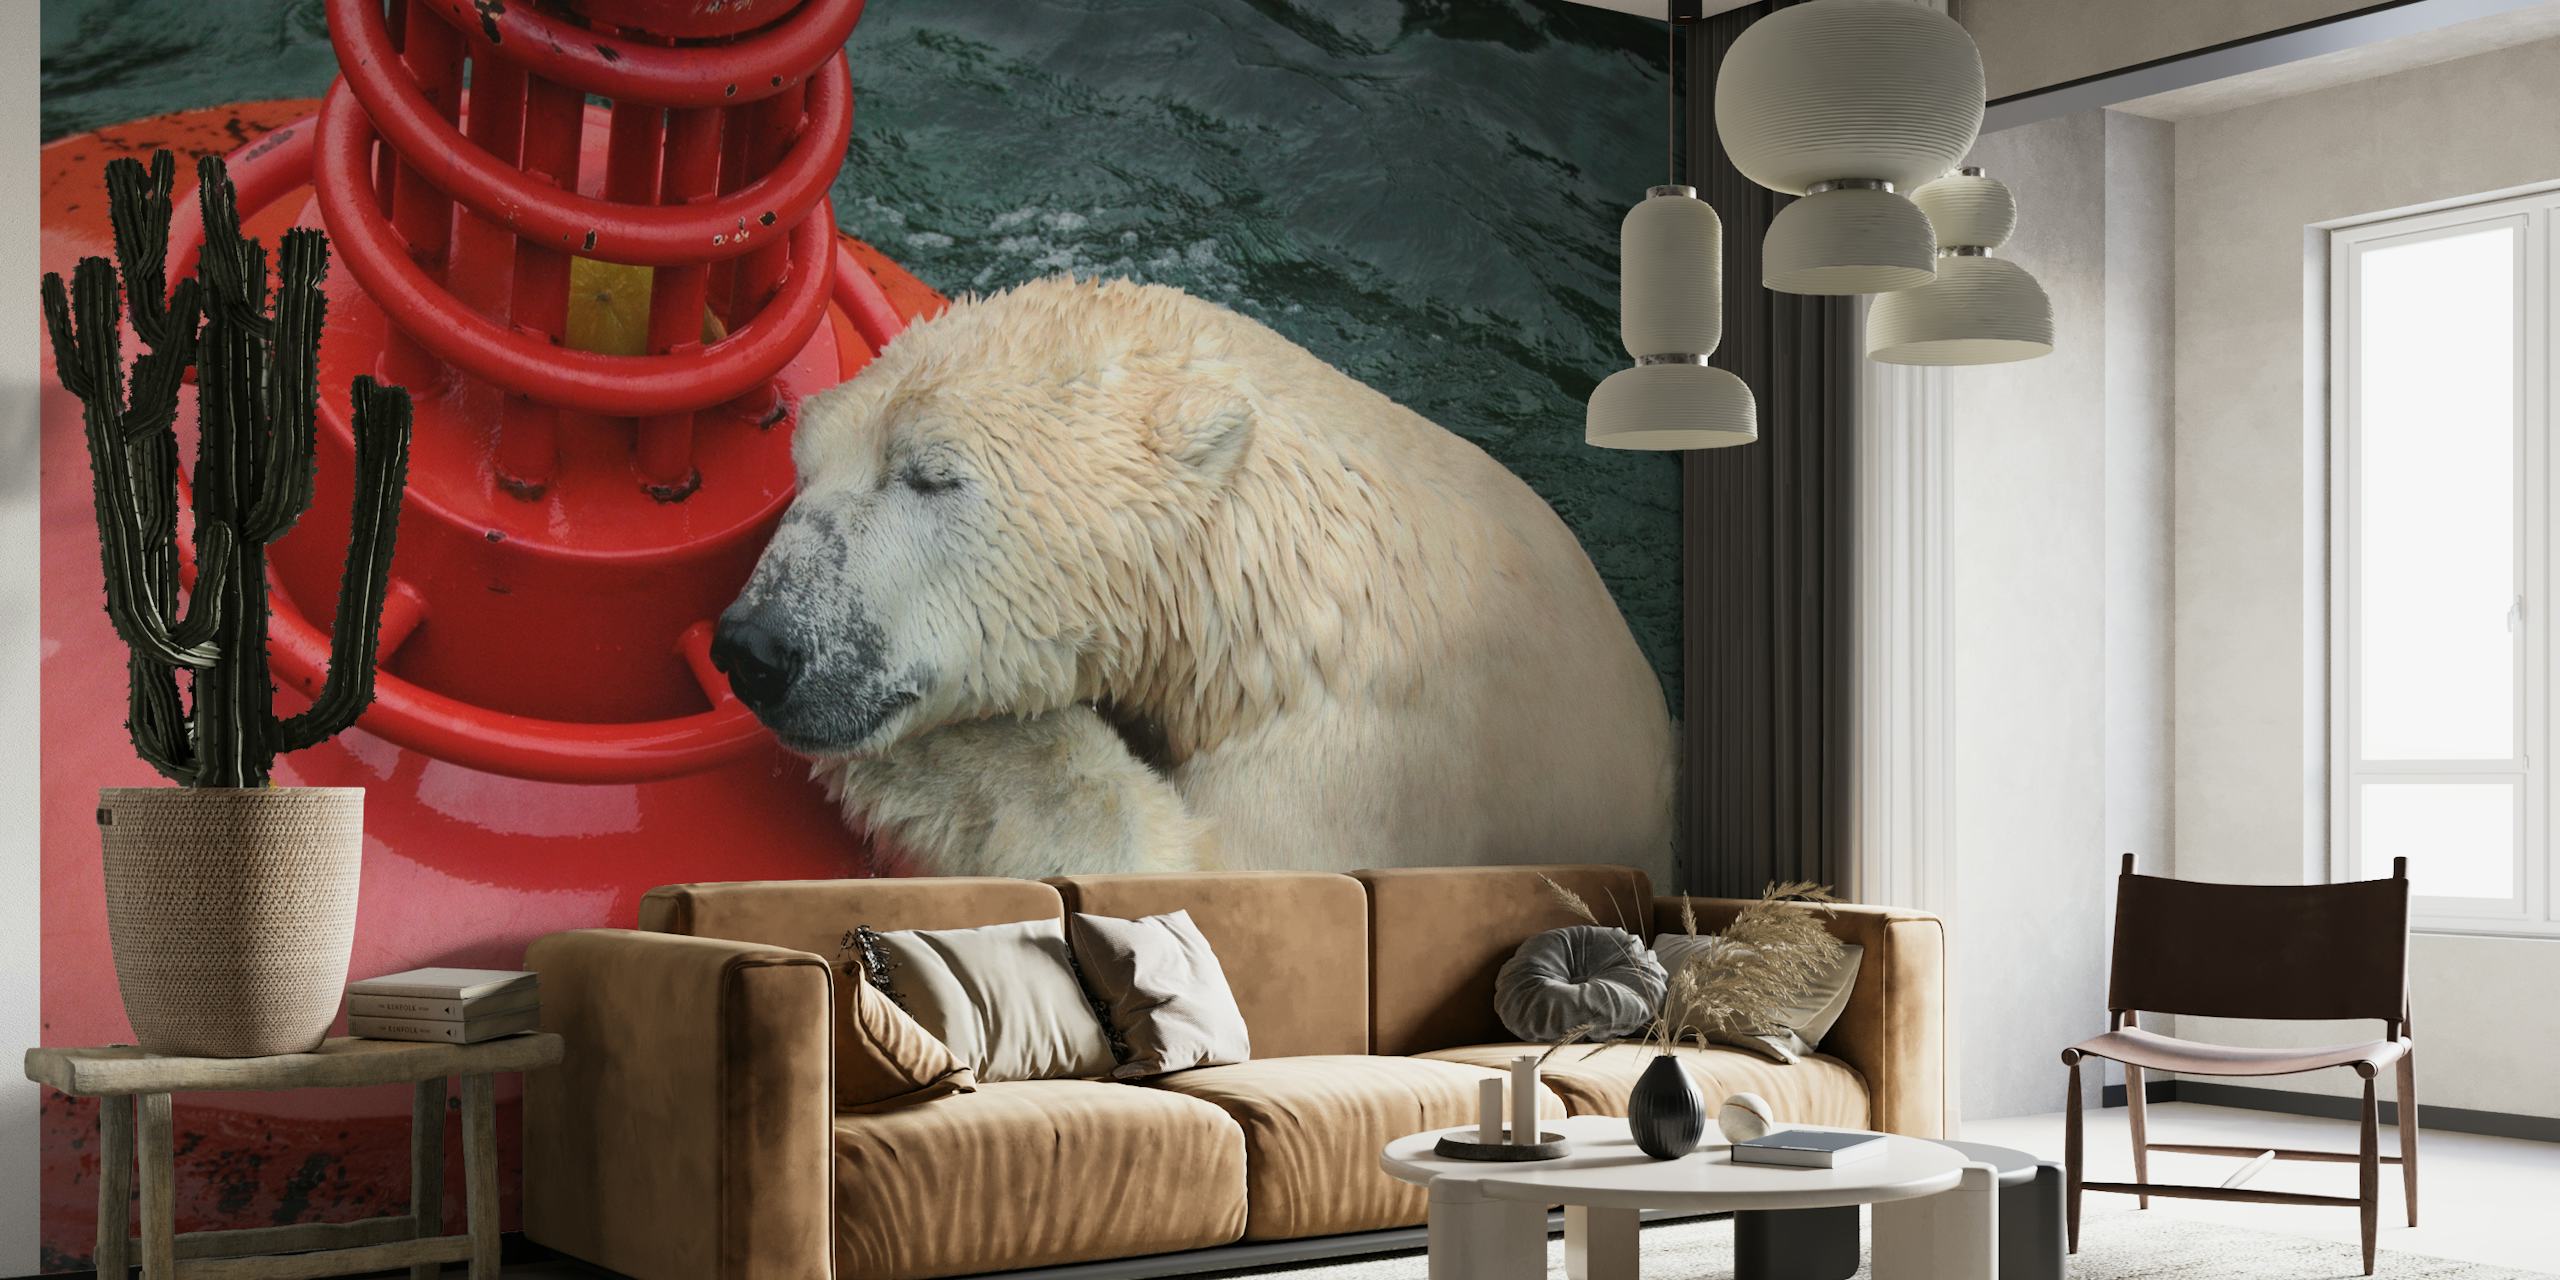 Een ijsbeer rust tegen een rode boei op de watermuurschildering